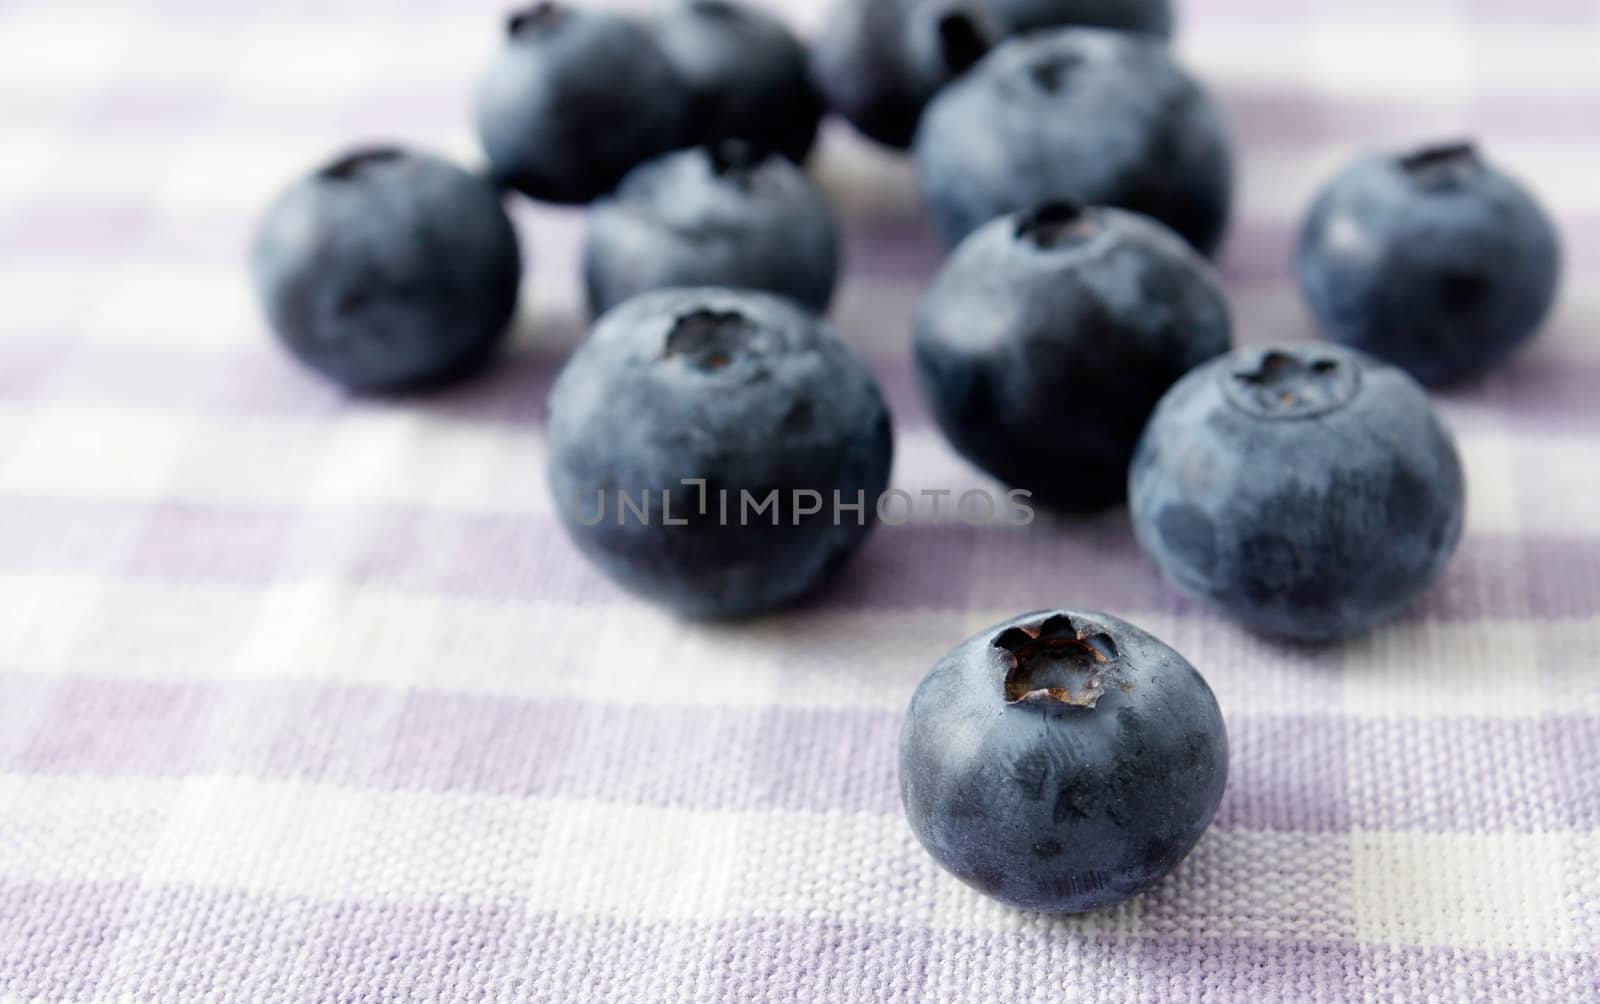 Blueberries by leeser